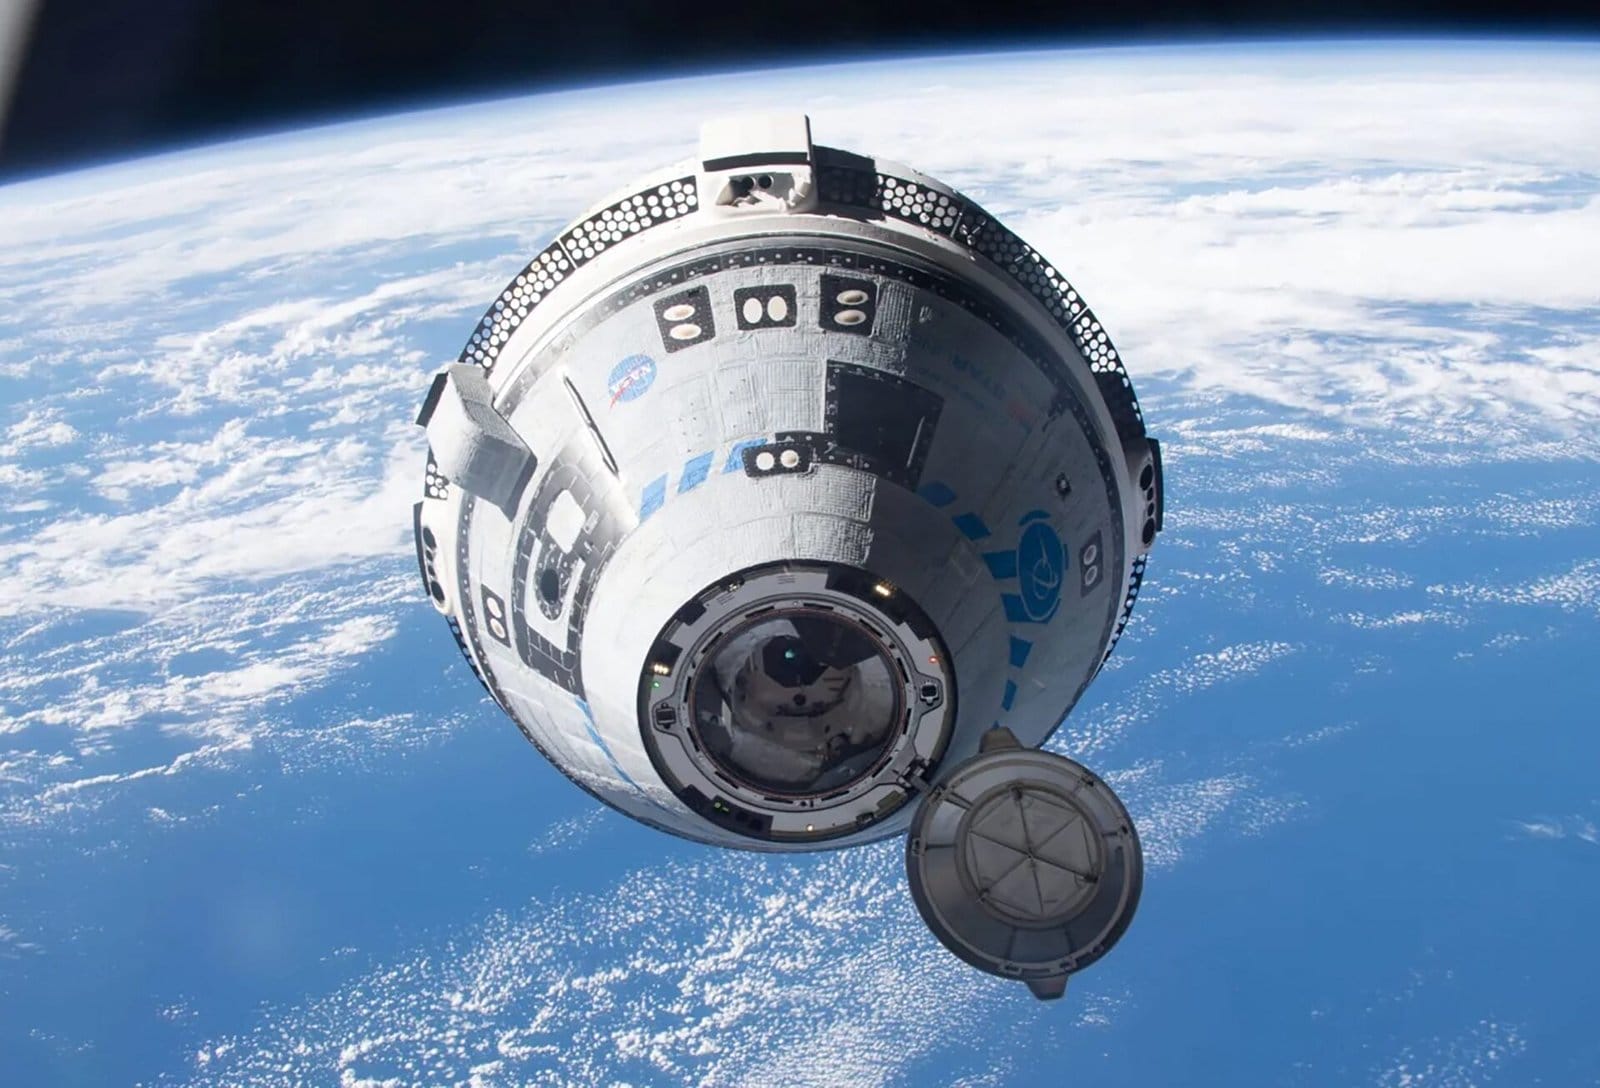 Autoridades garantem: astronautas não estão presos na estação espacial